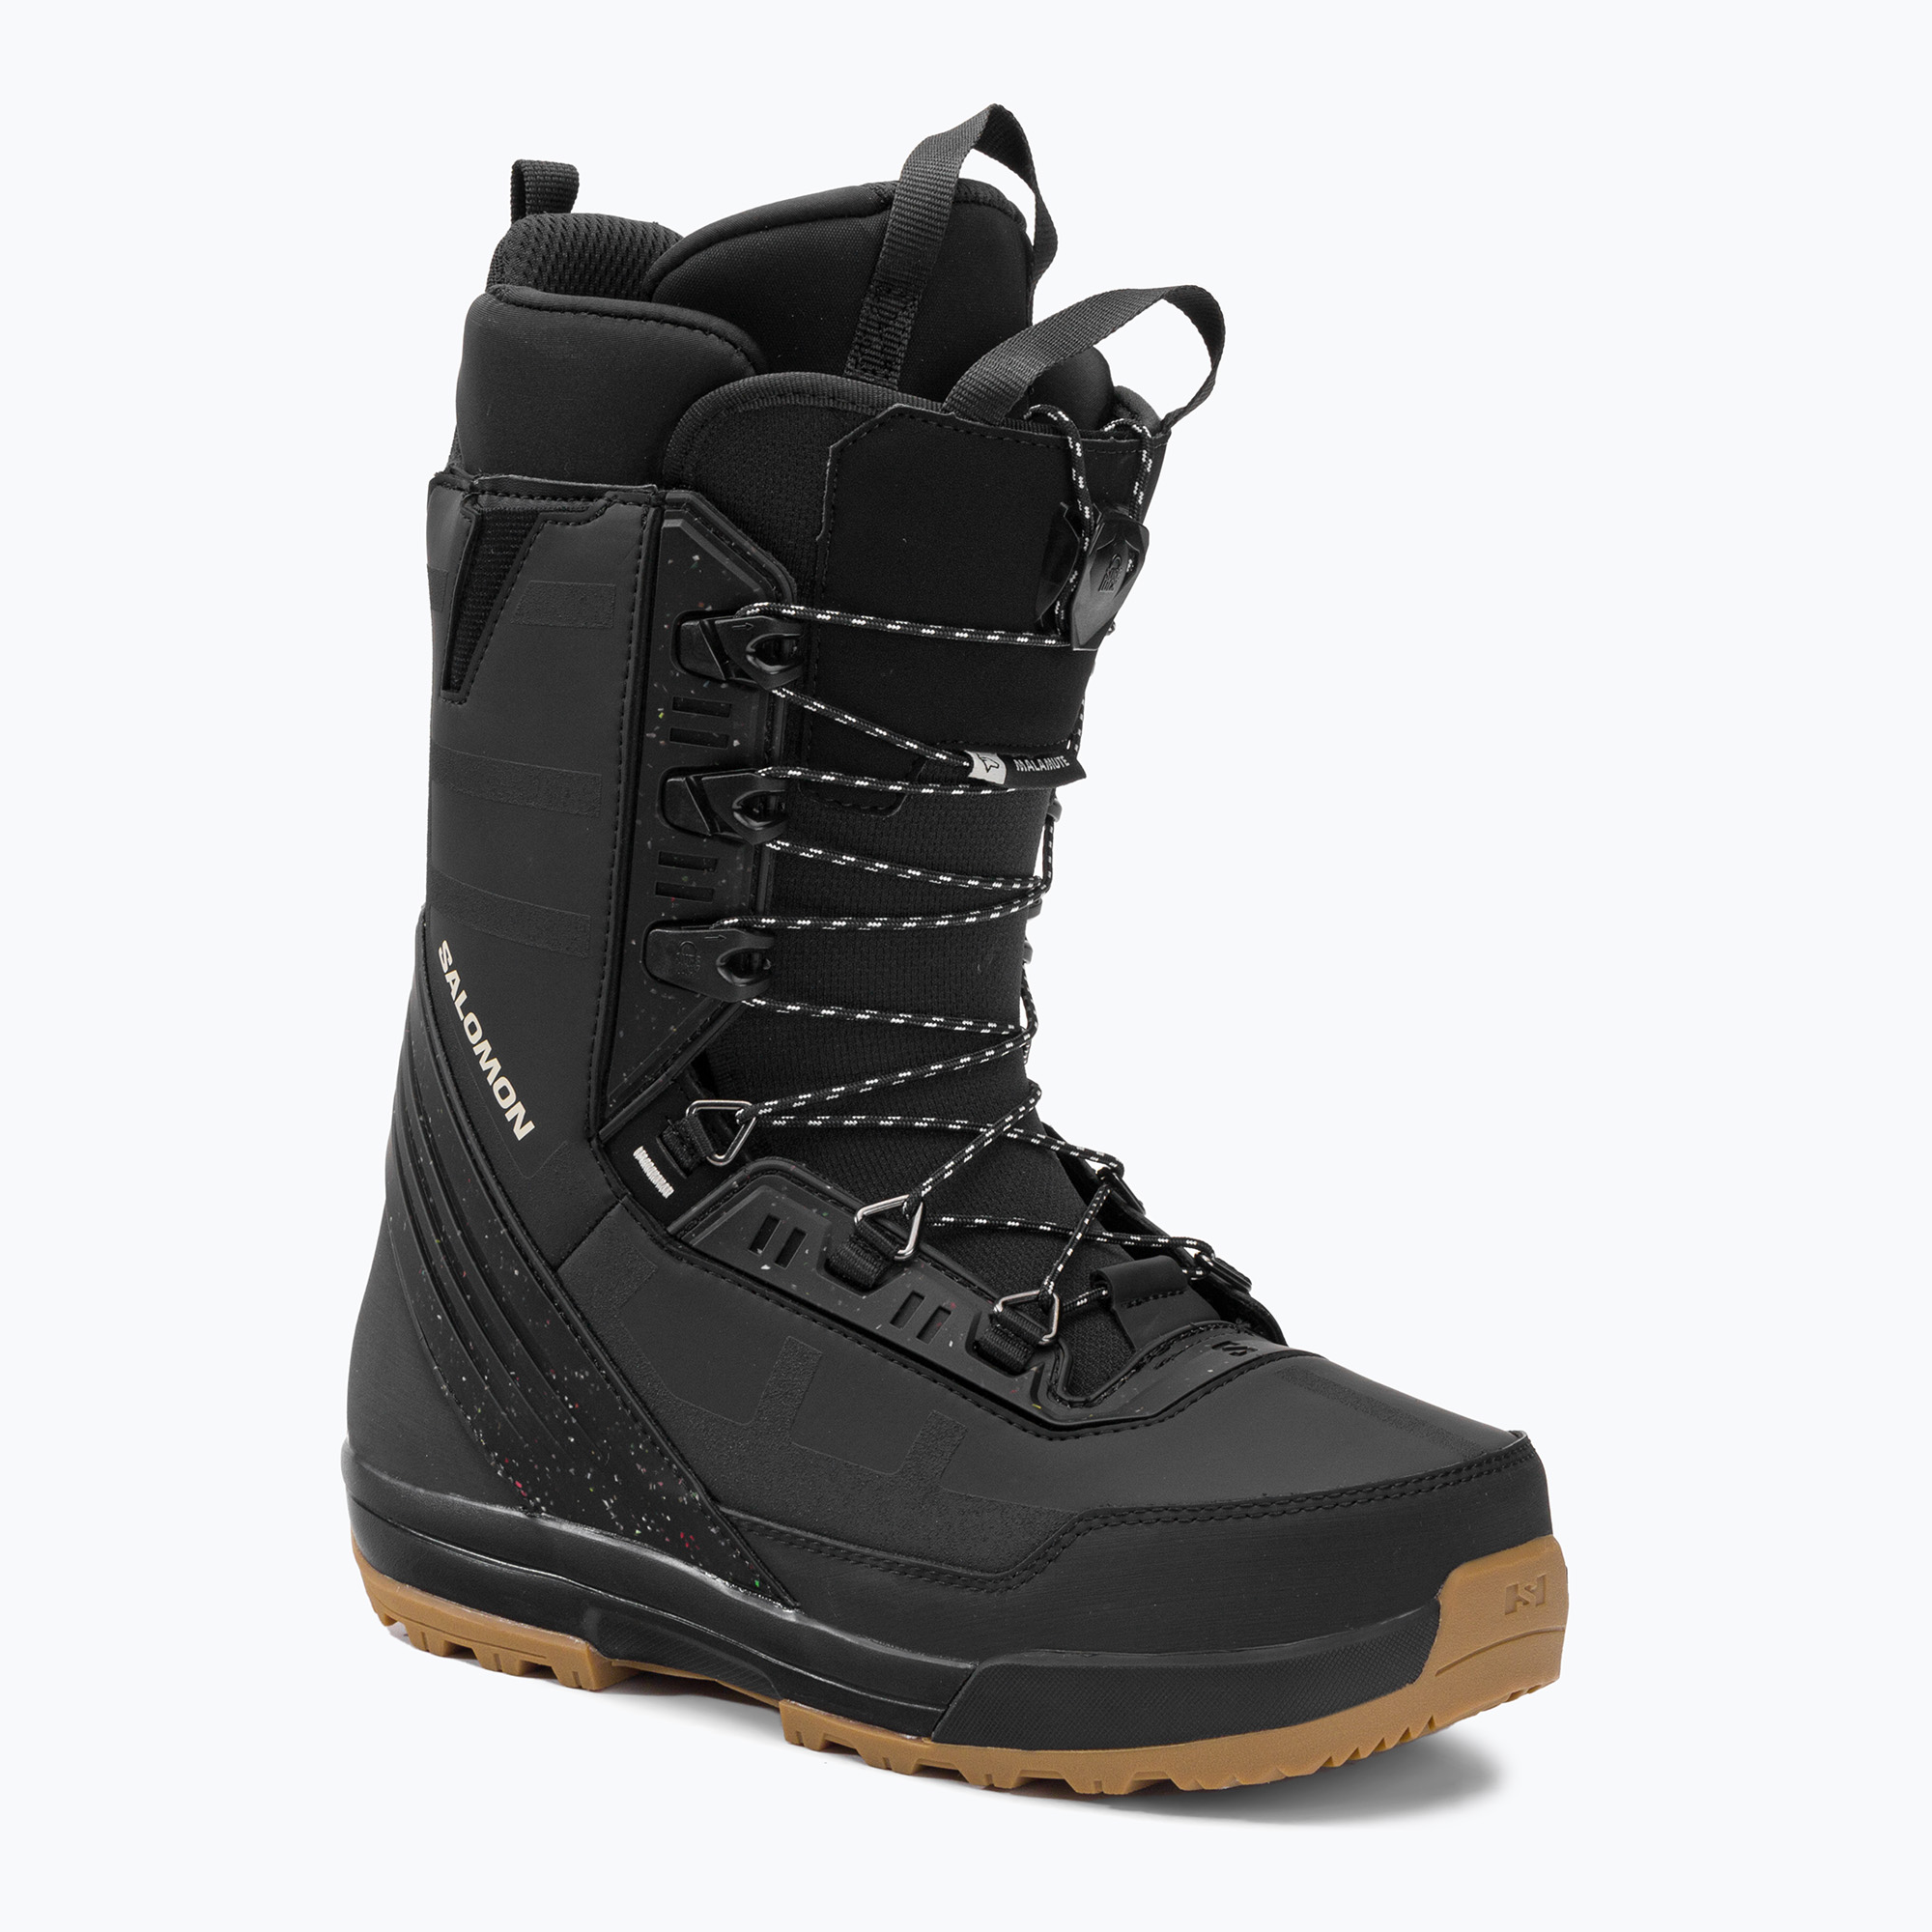 Pánske snowboardové topánky Salomon Malamute čierne L416723